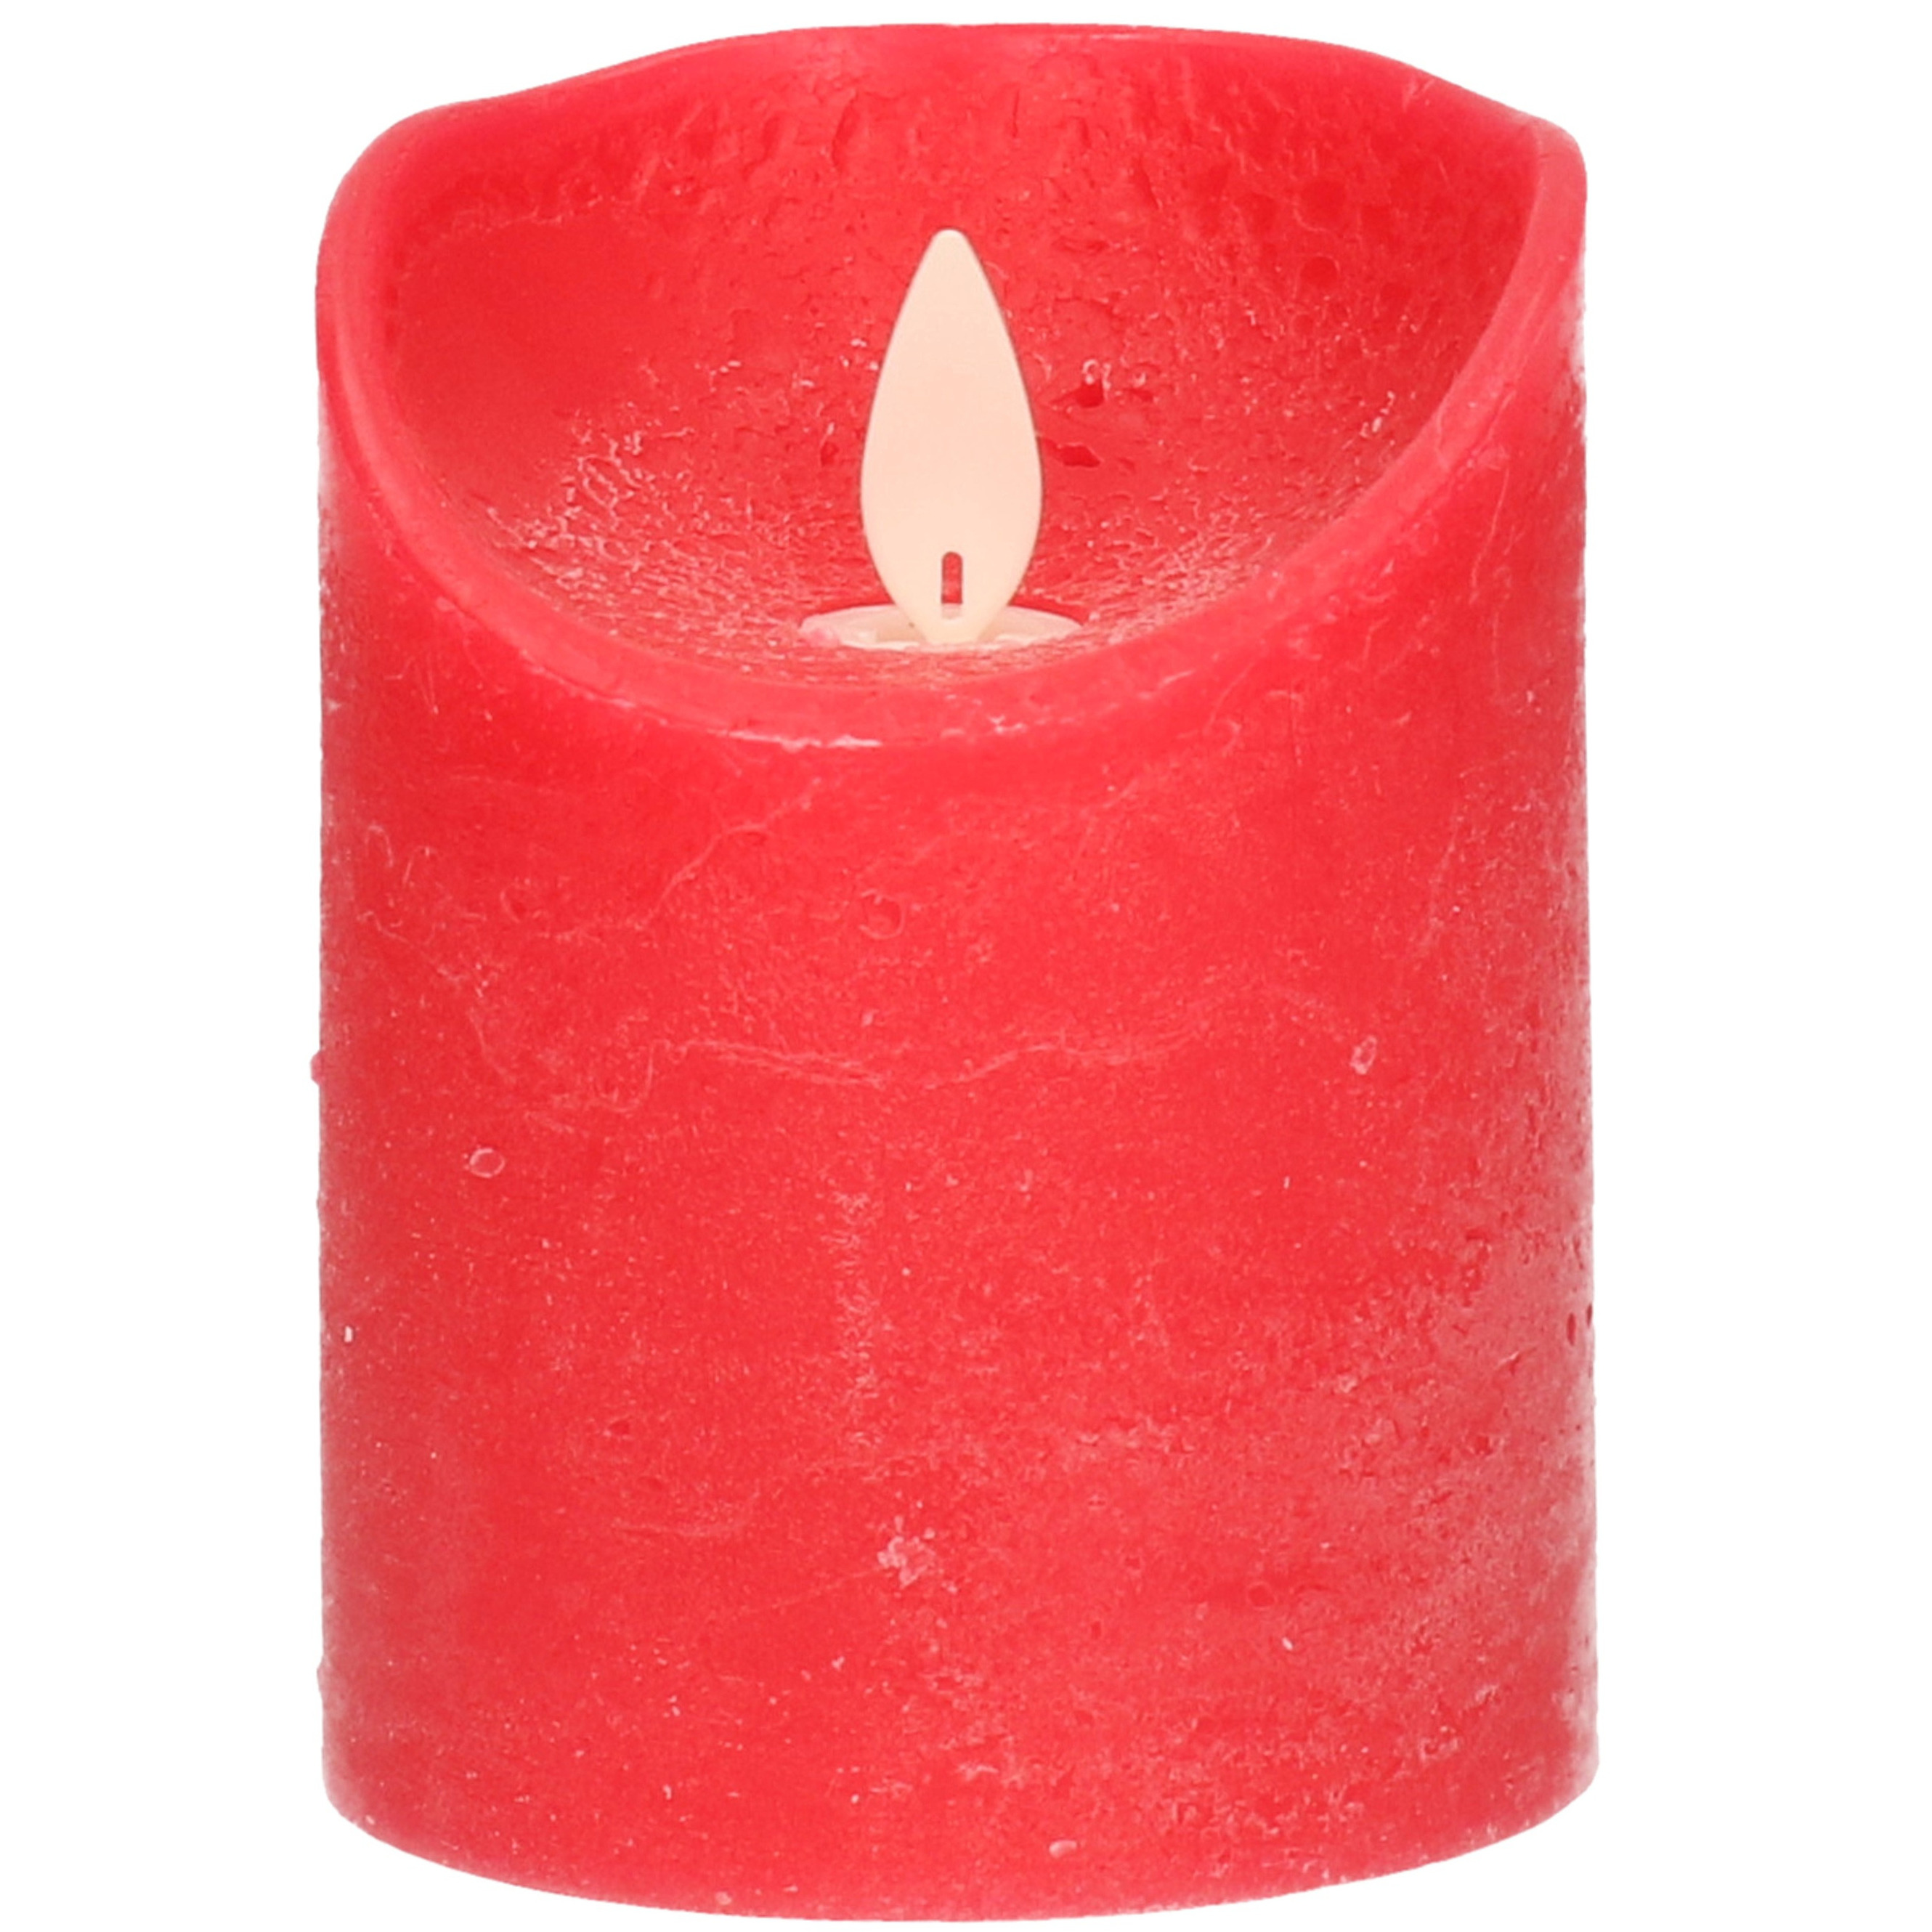 1x Rode LED kaarsen - stompkaarsen met bewegende vlam 10 cm